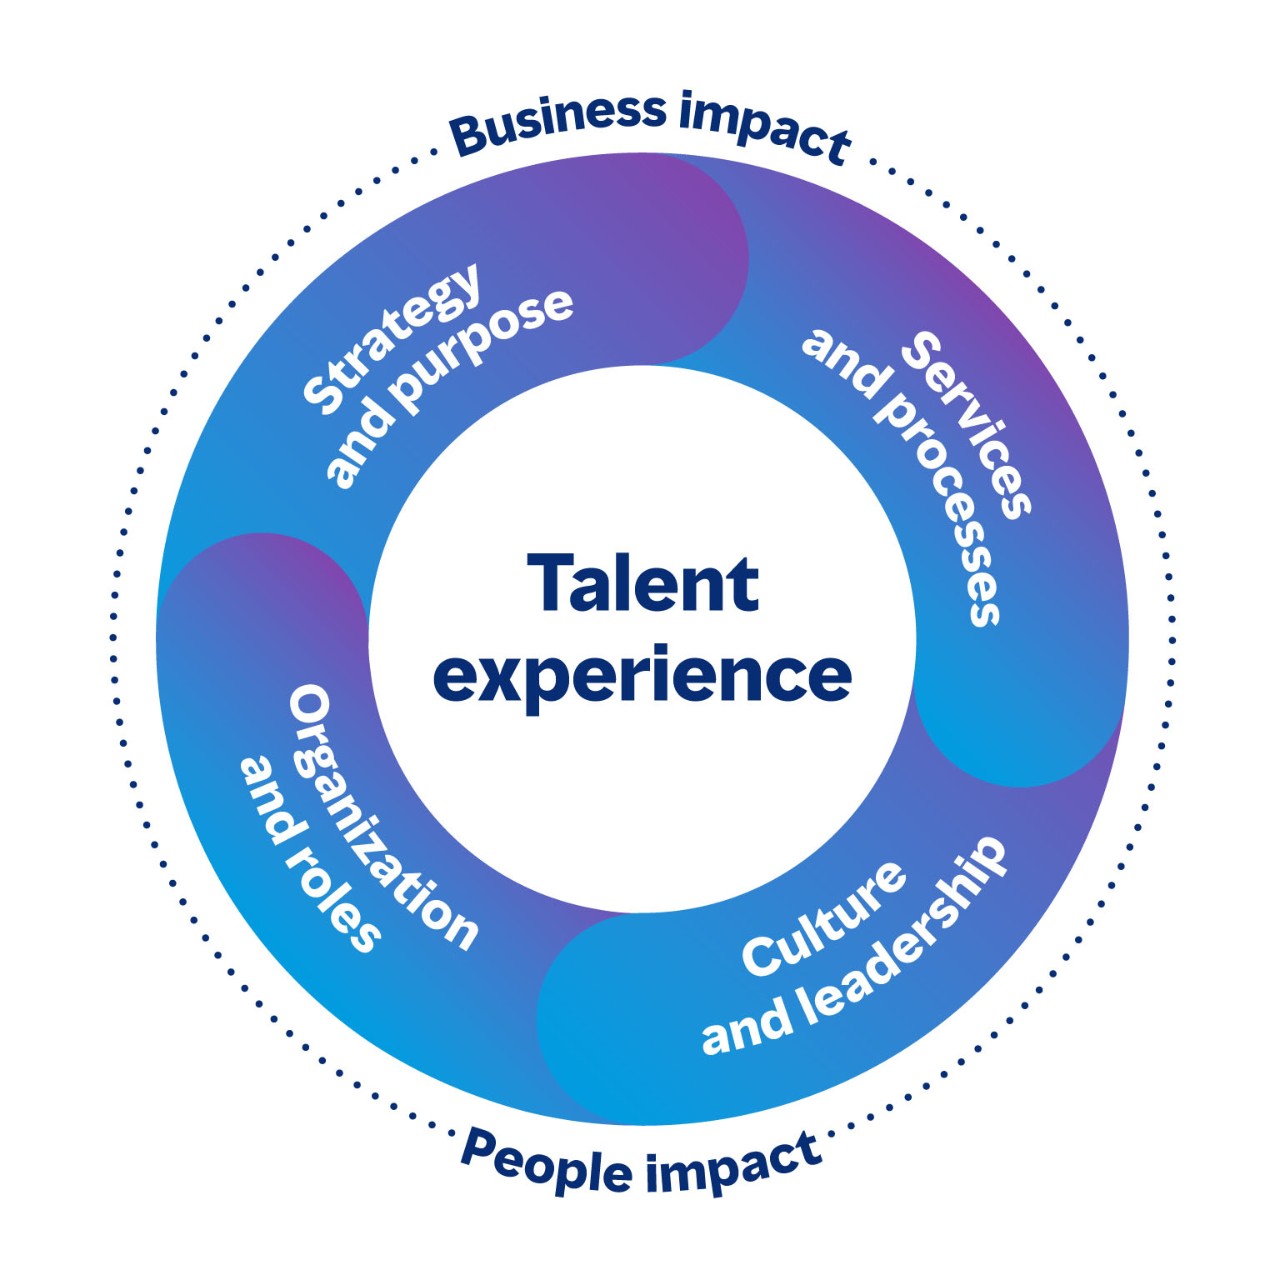 Imagen circular que muestra las áreas conectadas de la experiencia de talento que tienen un impacto tanto en el negocio como en las personas. Las cuatro áreas son Estrategia y propósito, Servicios y procesos, Cultura y liderazgo, y organización y roles.